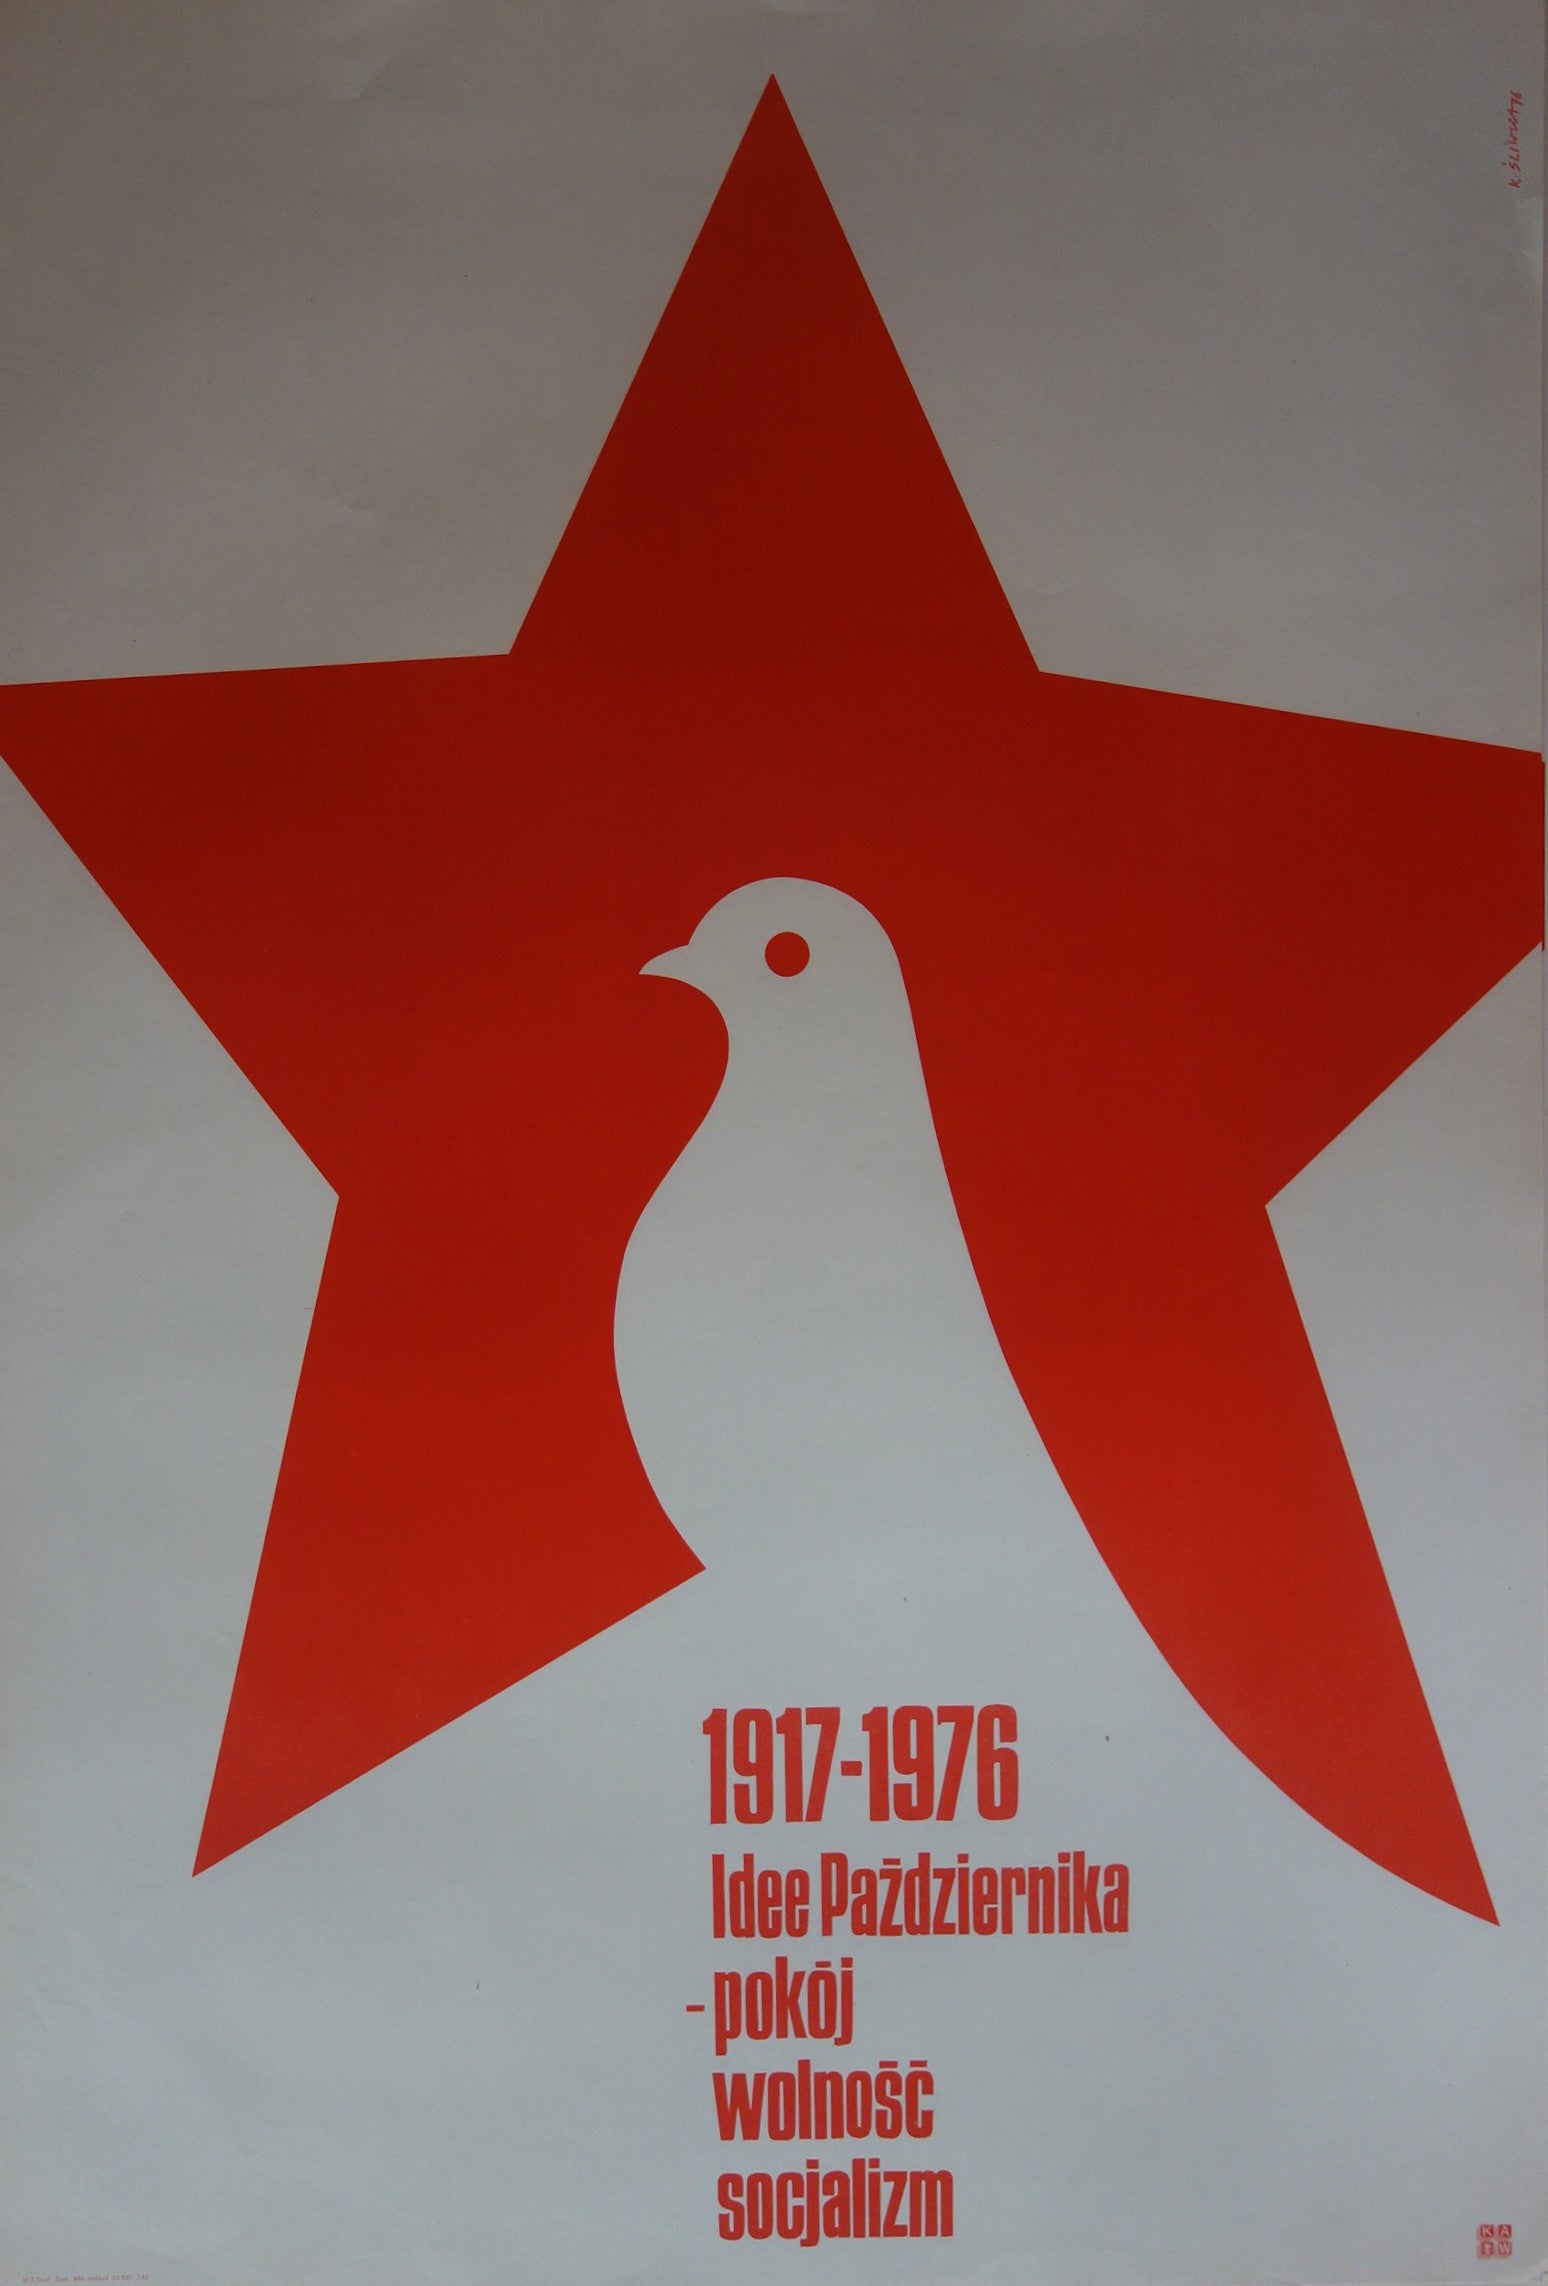 Idee Pazdziernika - pokoj wolnosc socjalizm